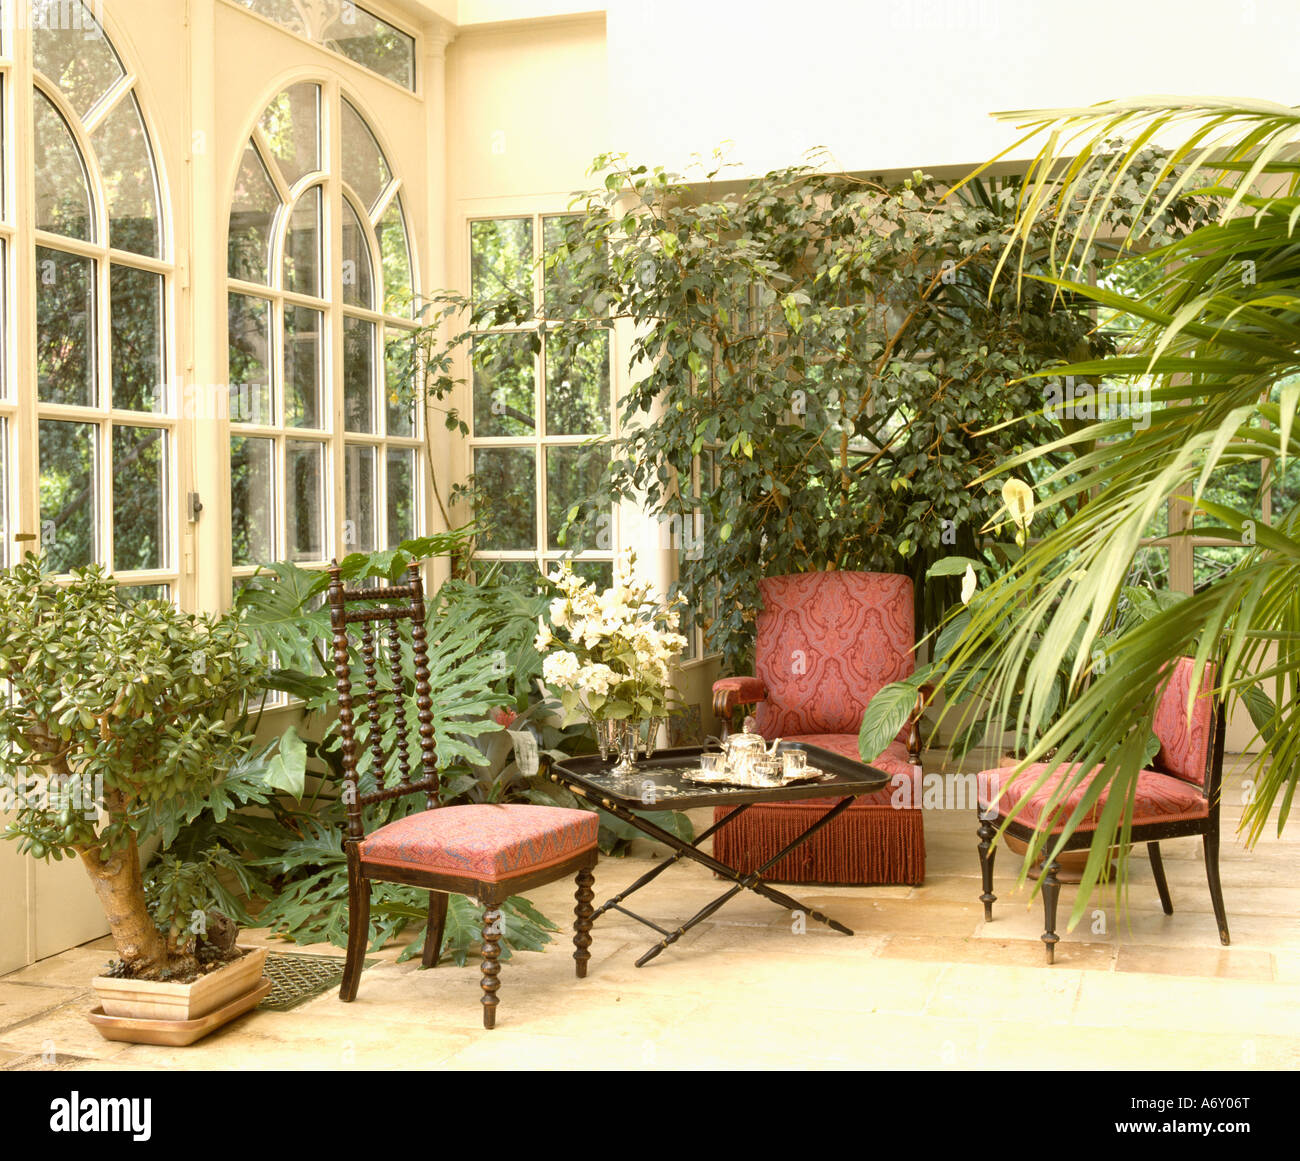 Chaises avec tissus rouges dans la véranda extension avec des plantes d'intérieur Banque D'Images